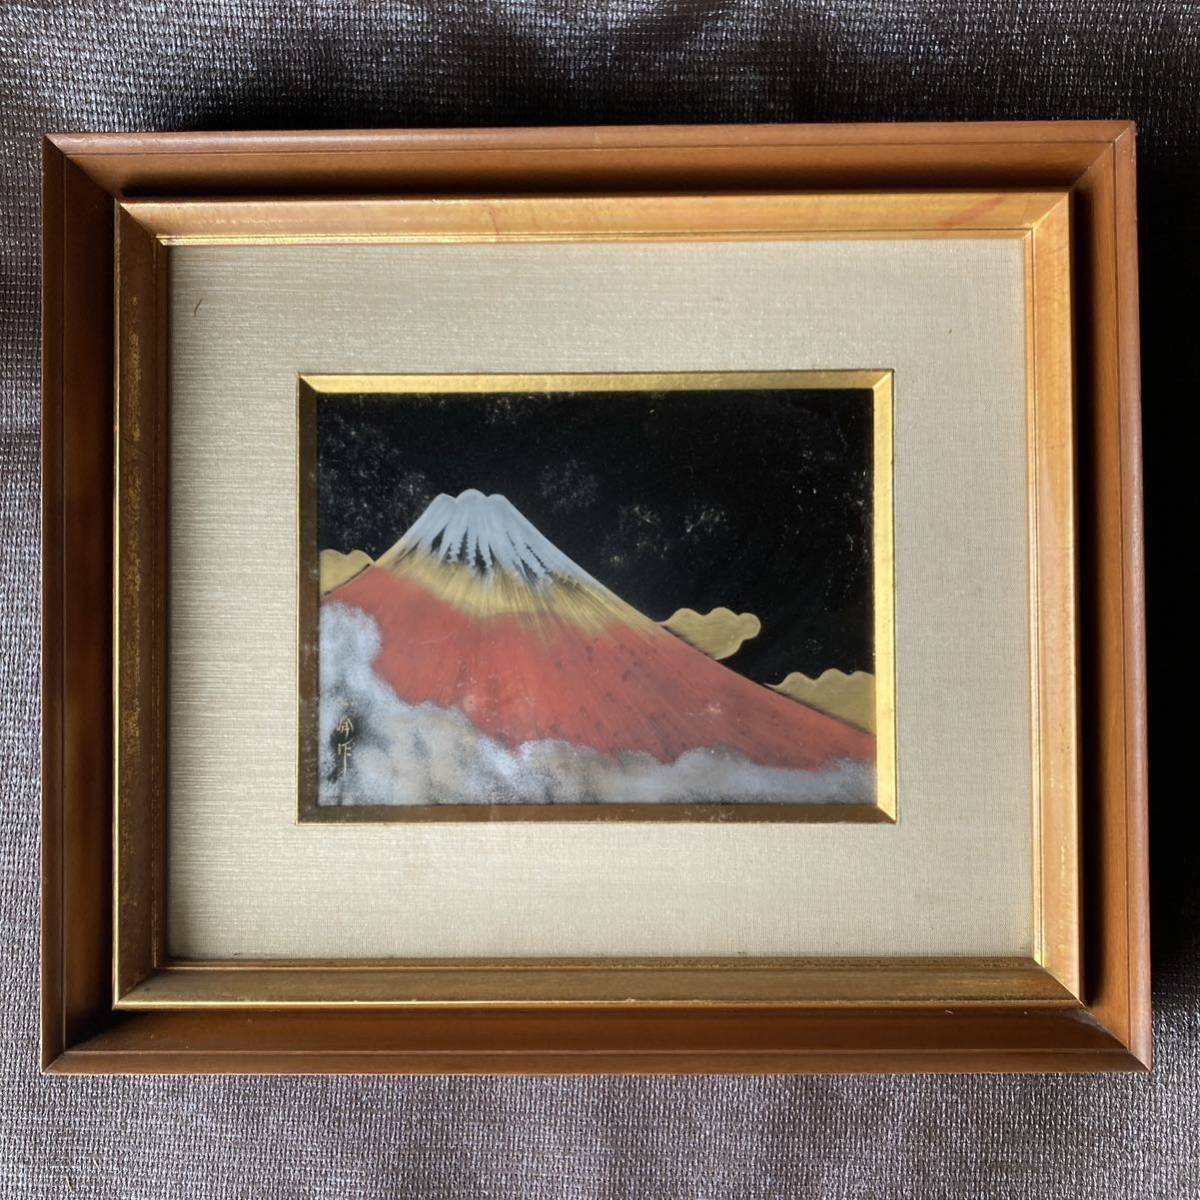 日出 富士山 垂海政美 大丸艺术部 传统工艺品 红色富士山 日本画 框画 室内入口 幸运符 好运工艺品, 工艺, 漆艺, 其他的